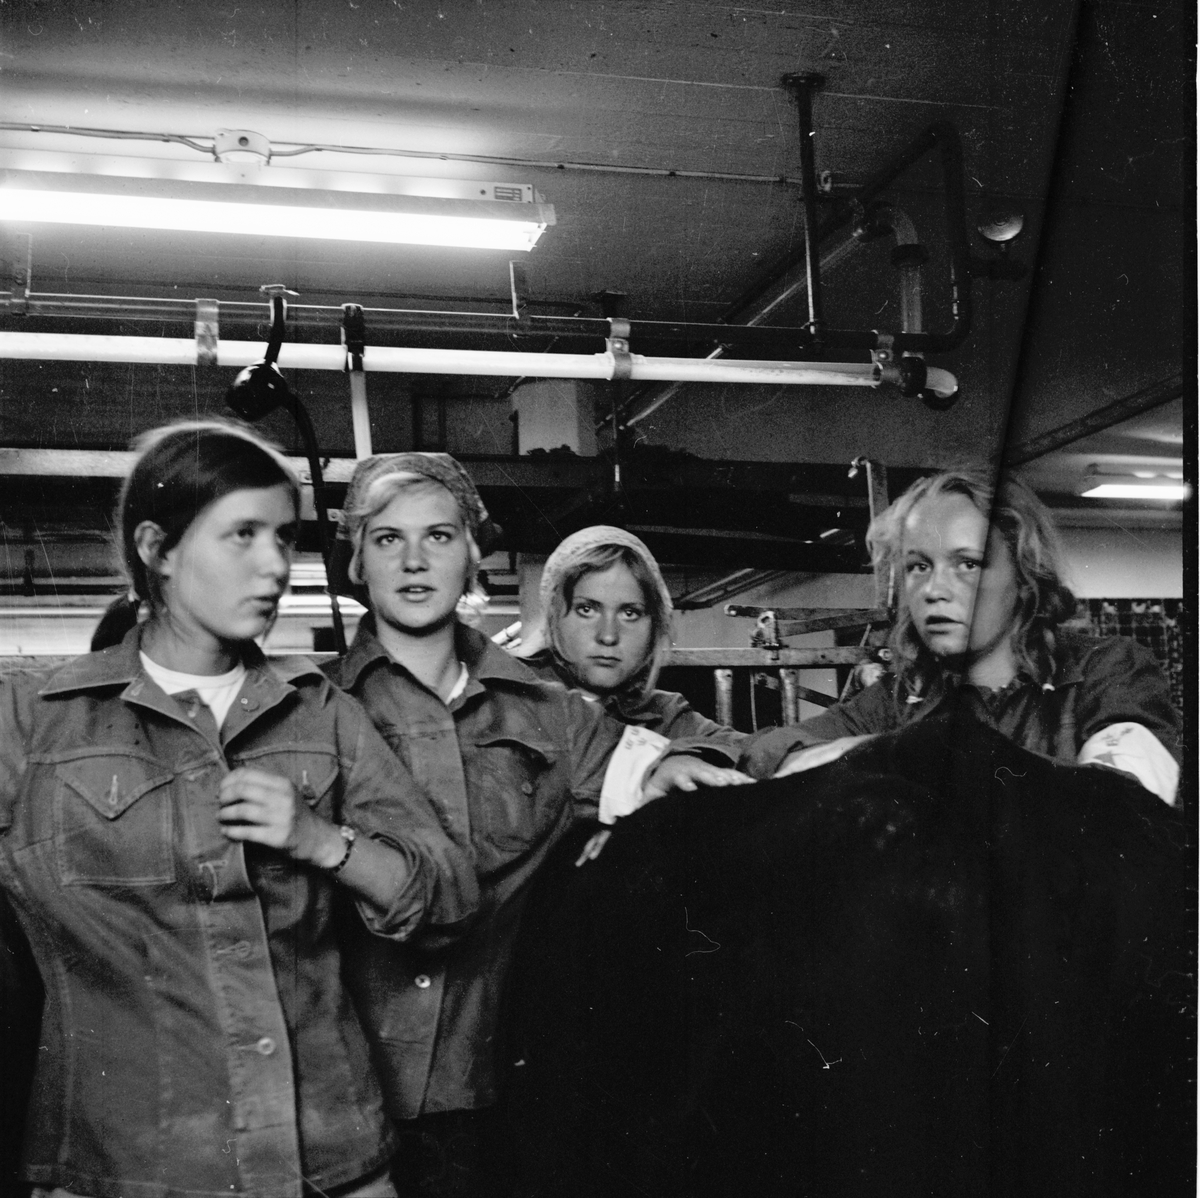 Arbrå,
Nytorp Blå Stjärnan,
Juni 1971